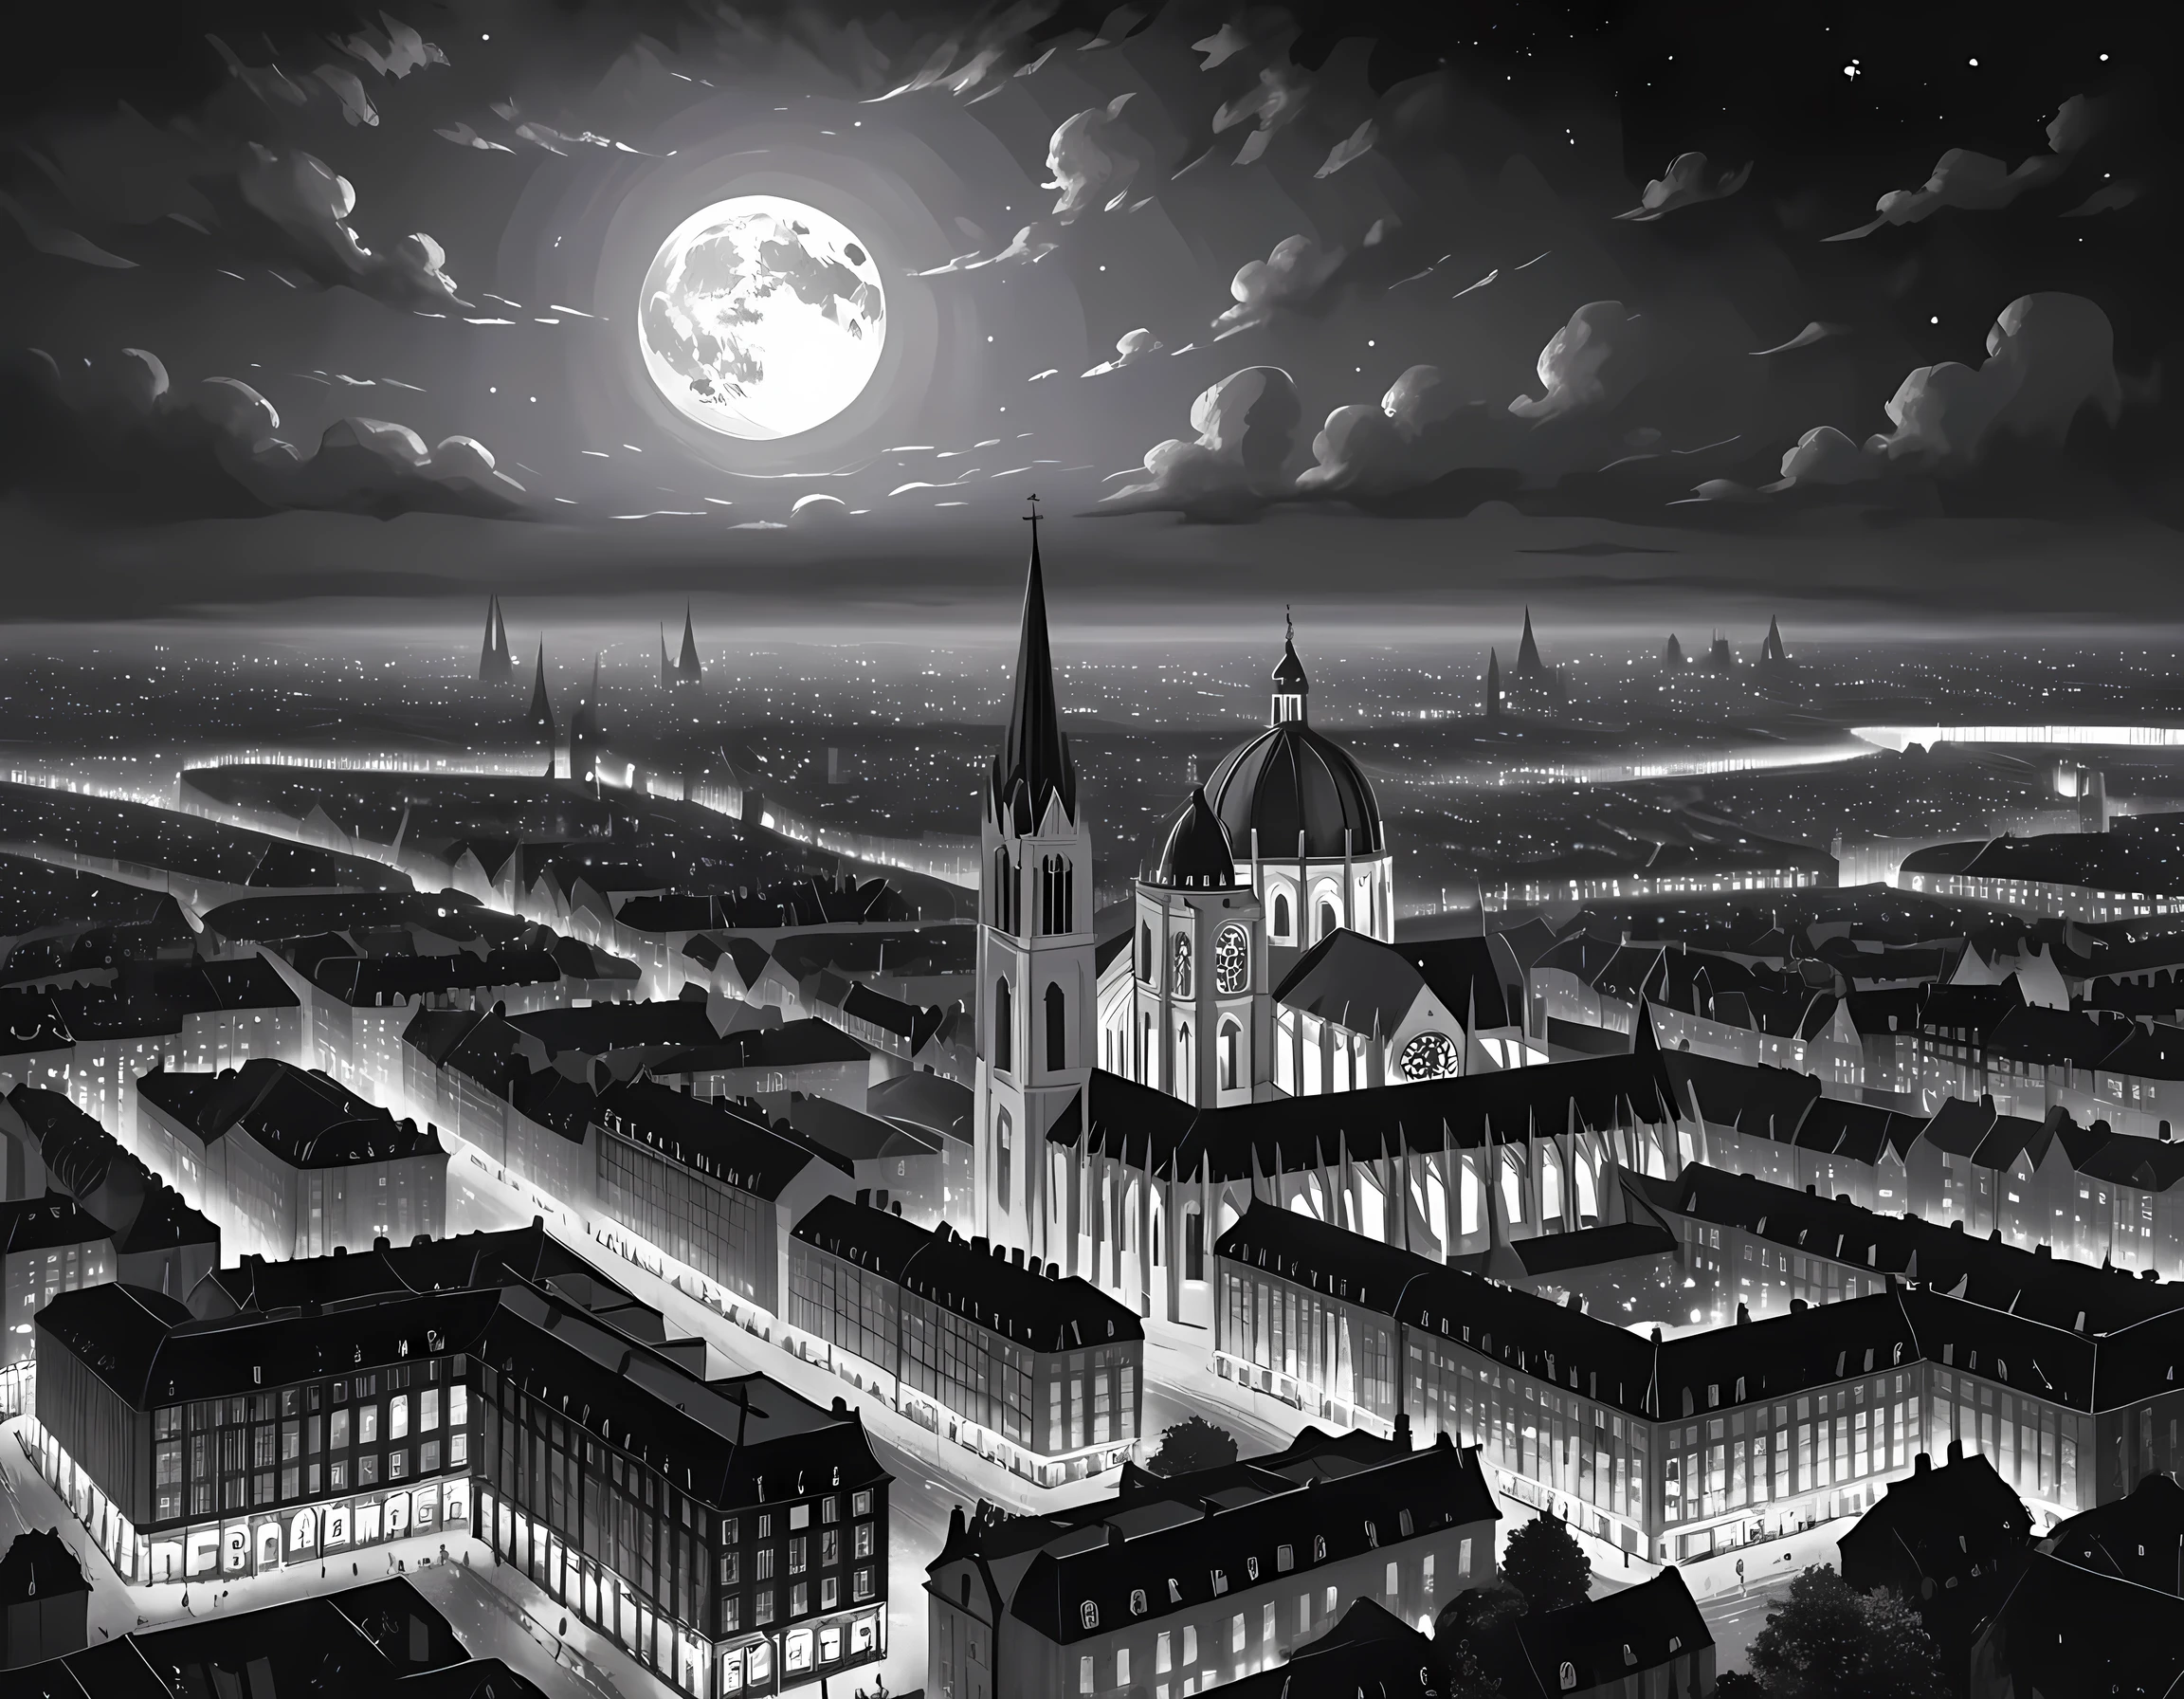  您可以看到 20 世紀初歐洲城市天際線視圖的黑白圖片, 教堂 (錯綜複雜的細節, 傑作, 最好的品質: 1.4), 城市中心 (錯綜複雜的細節, 傑作, 最好的品質: 1.4), 和一些塔樓, 現在是晚上, the sky is full of 星星s, 整個城市被燈光照亮,  由 19 世紀末相機拍攝, 星星